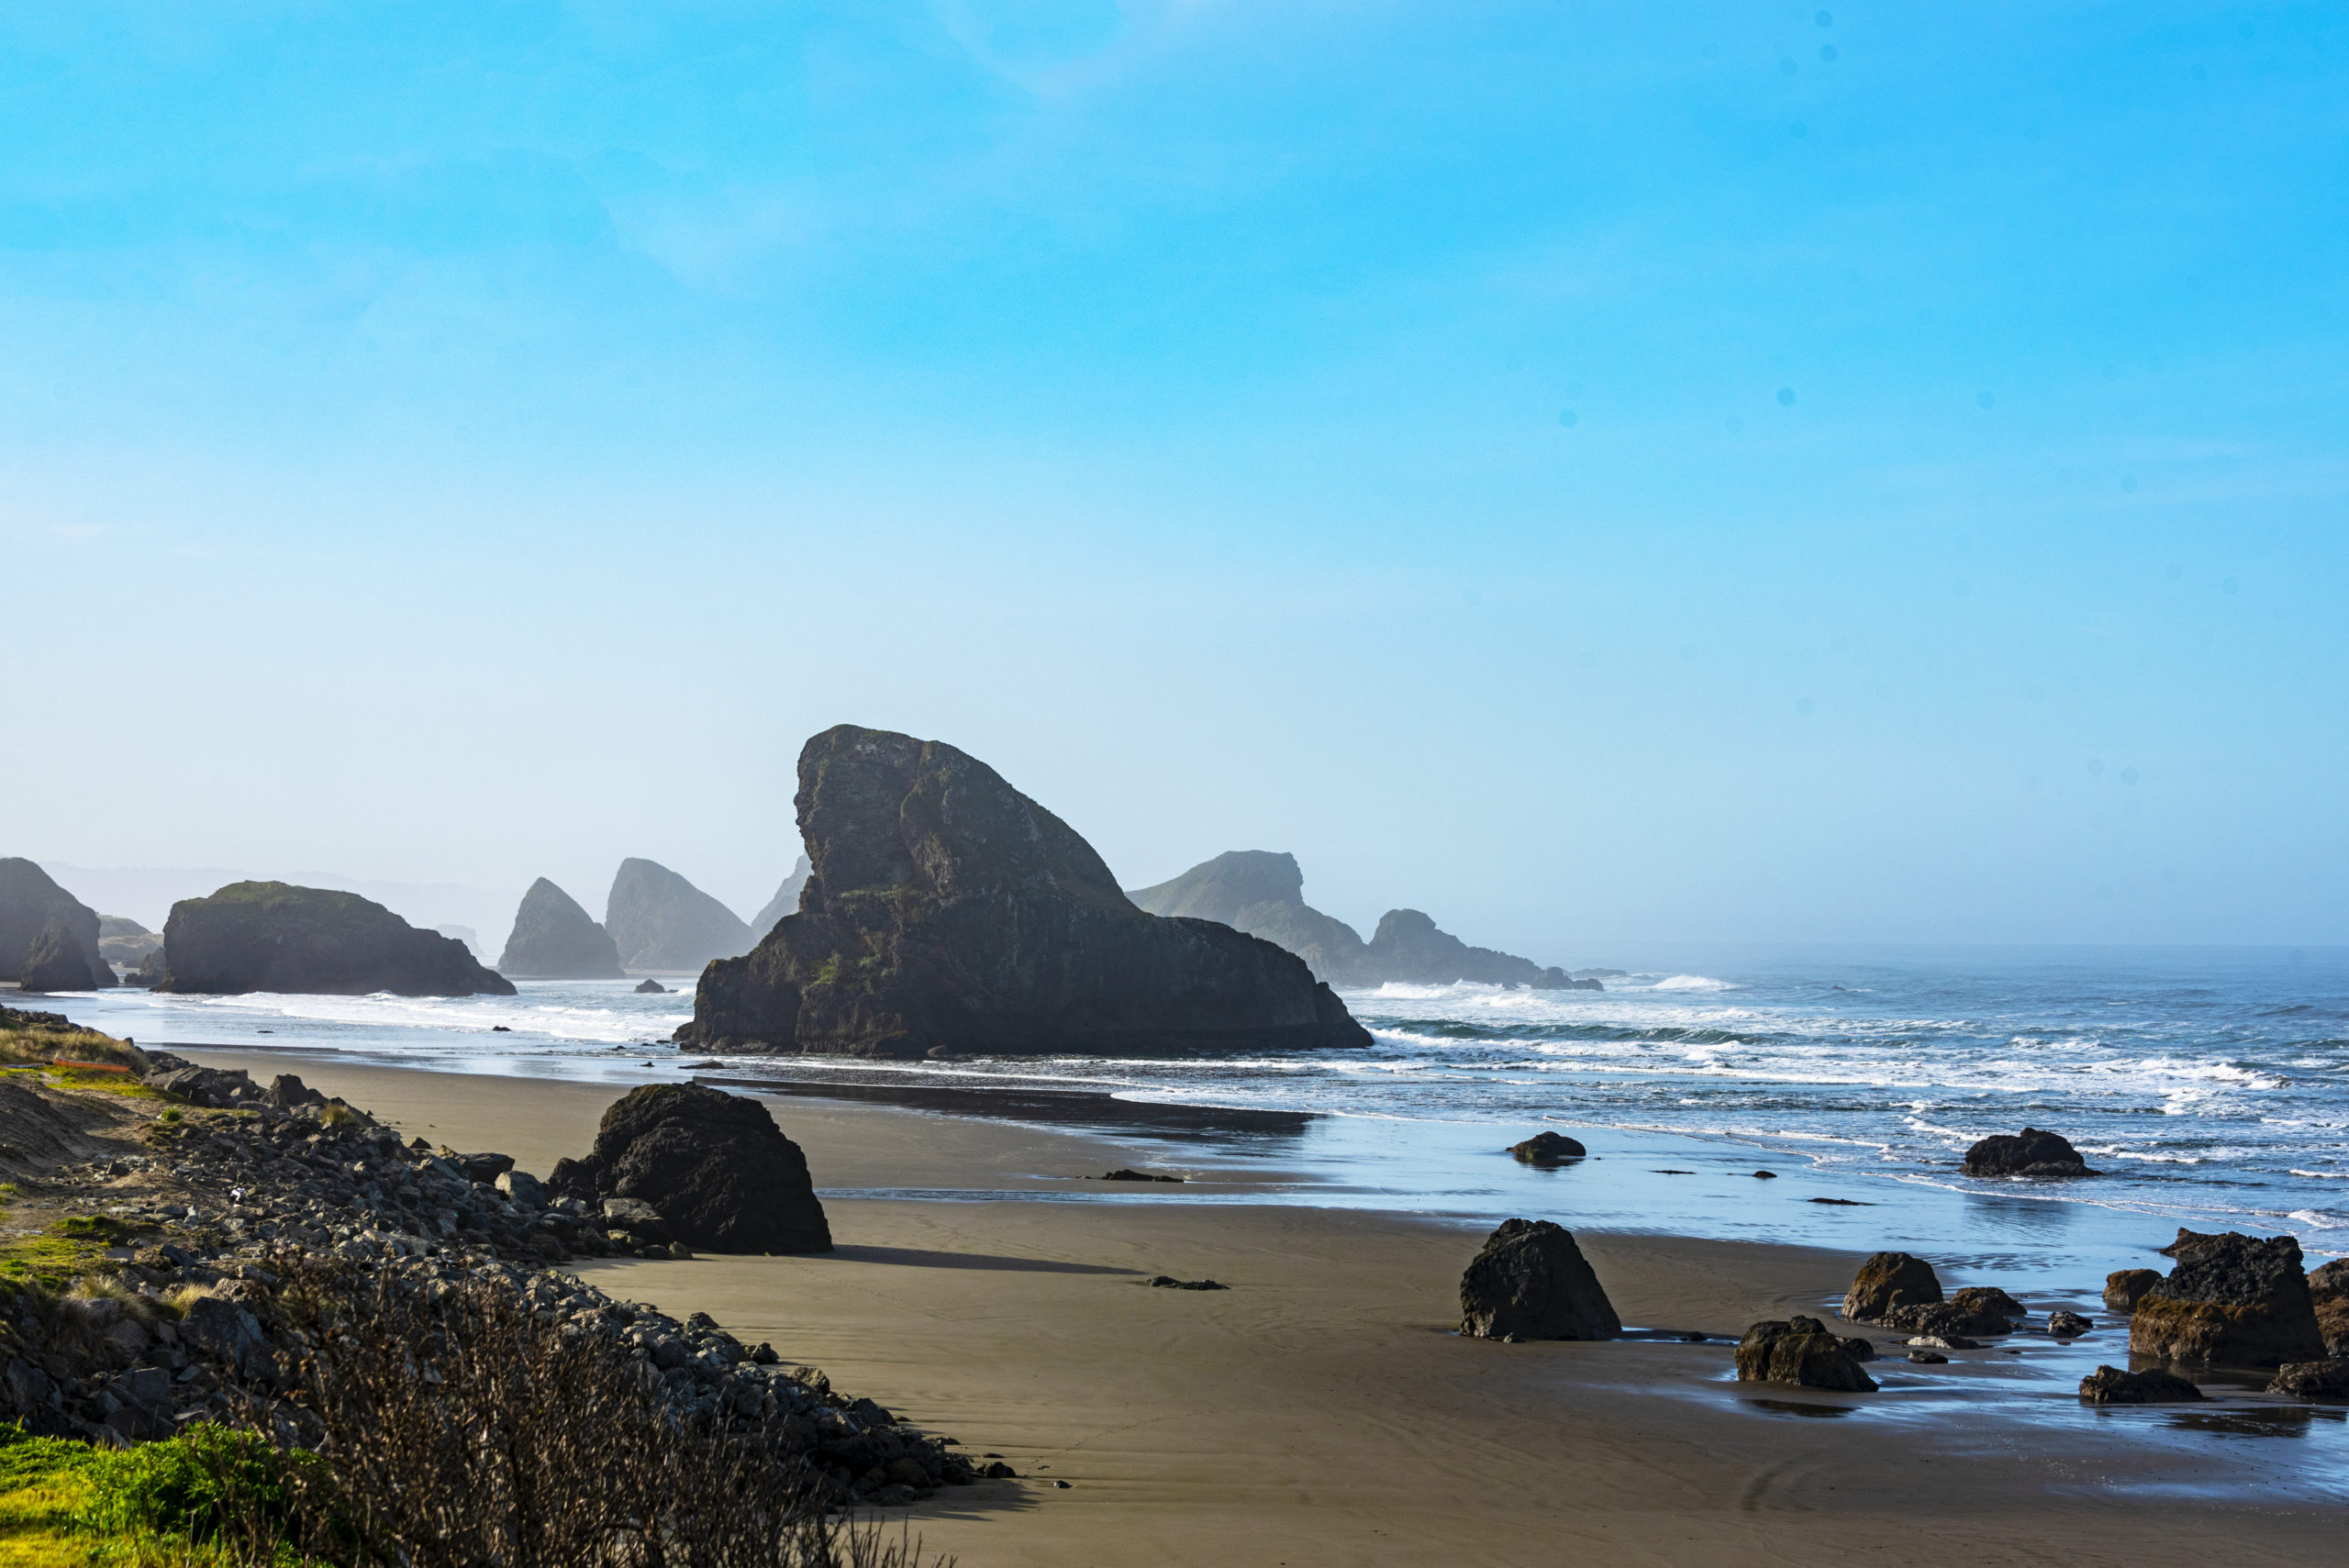 Sea stacks along southern Oregon coast